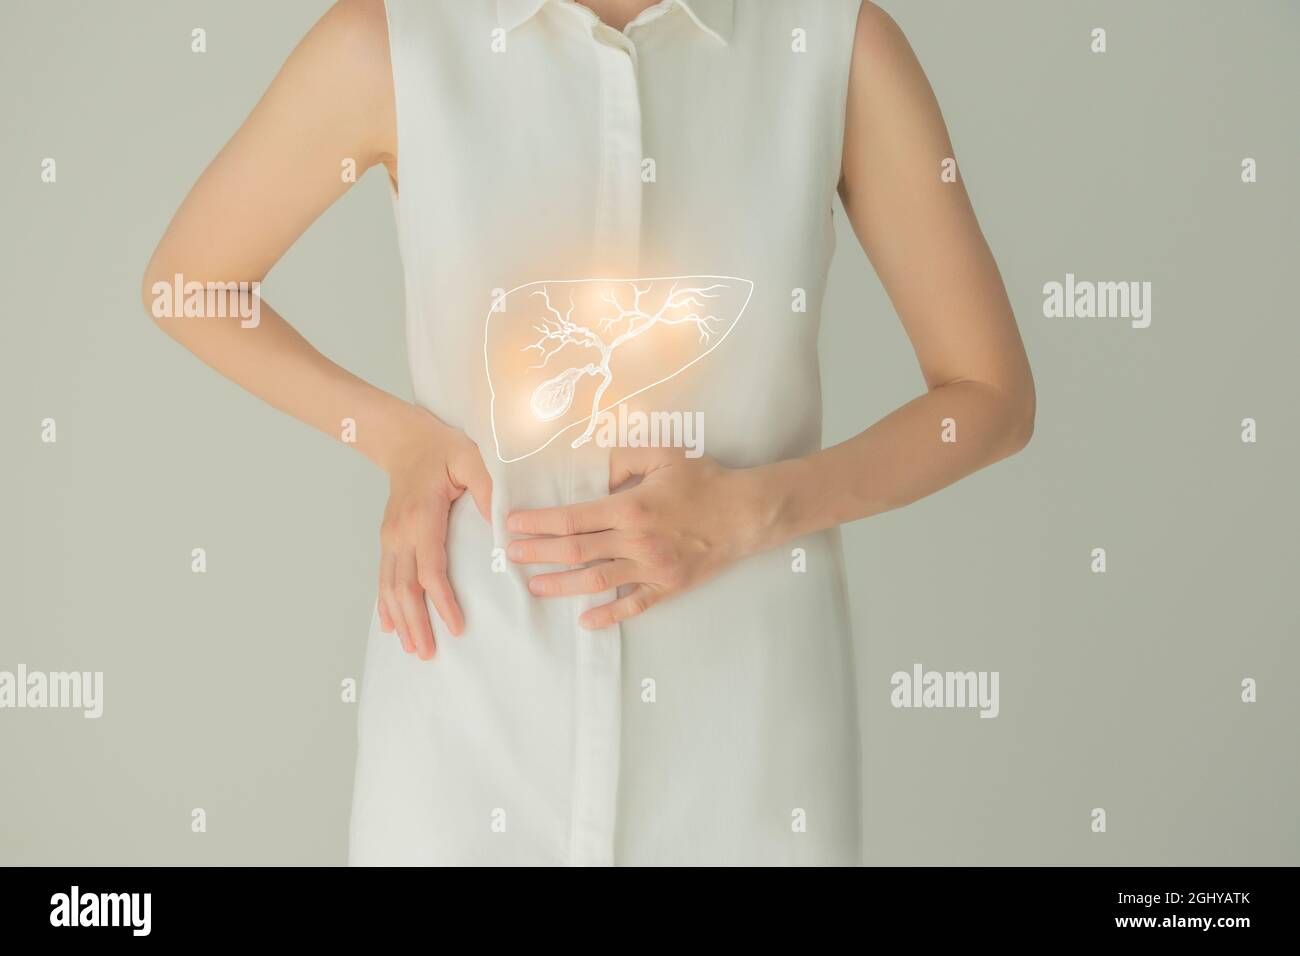 Paziente femminile irriconoscibile in abiti bianchi, evidenziata la cistifellea di corbone nelle mani. Concetto di problemi del sistema digestivo umano. Foto Stock